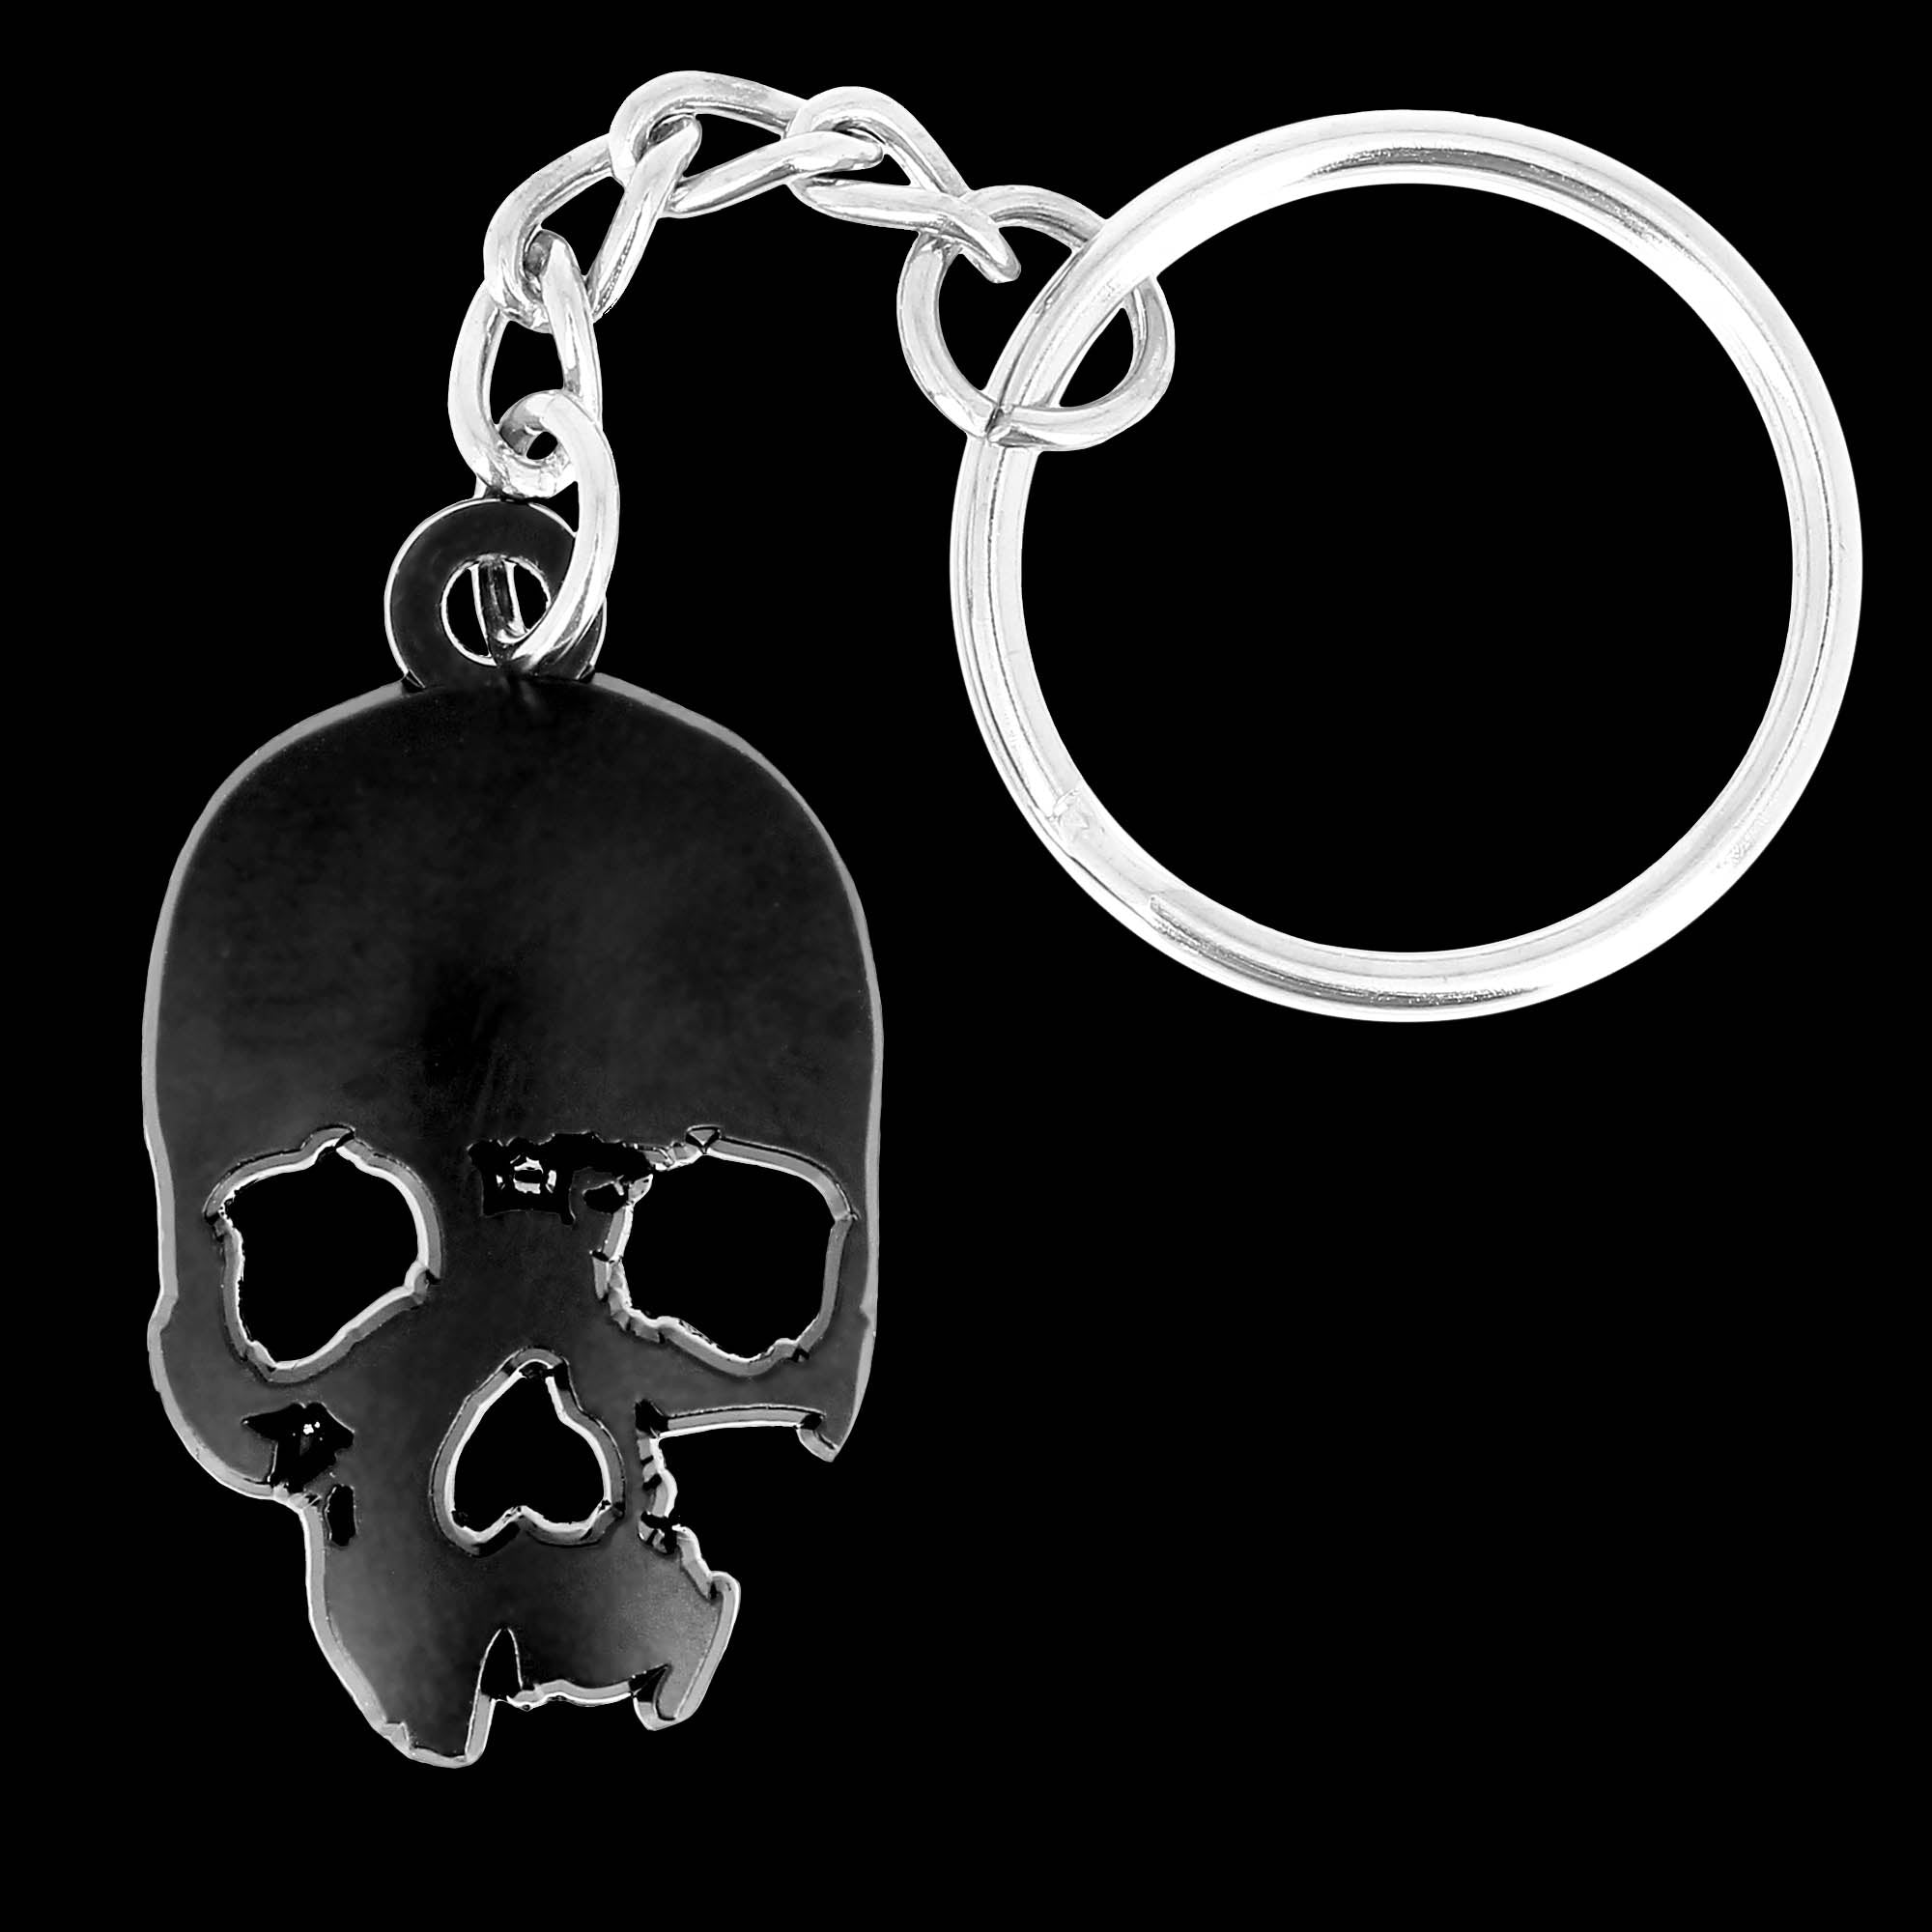 Jolly Roger black metal skull keychain – Flibustier Paris